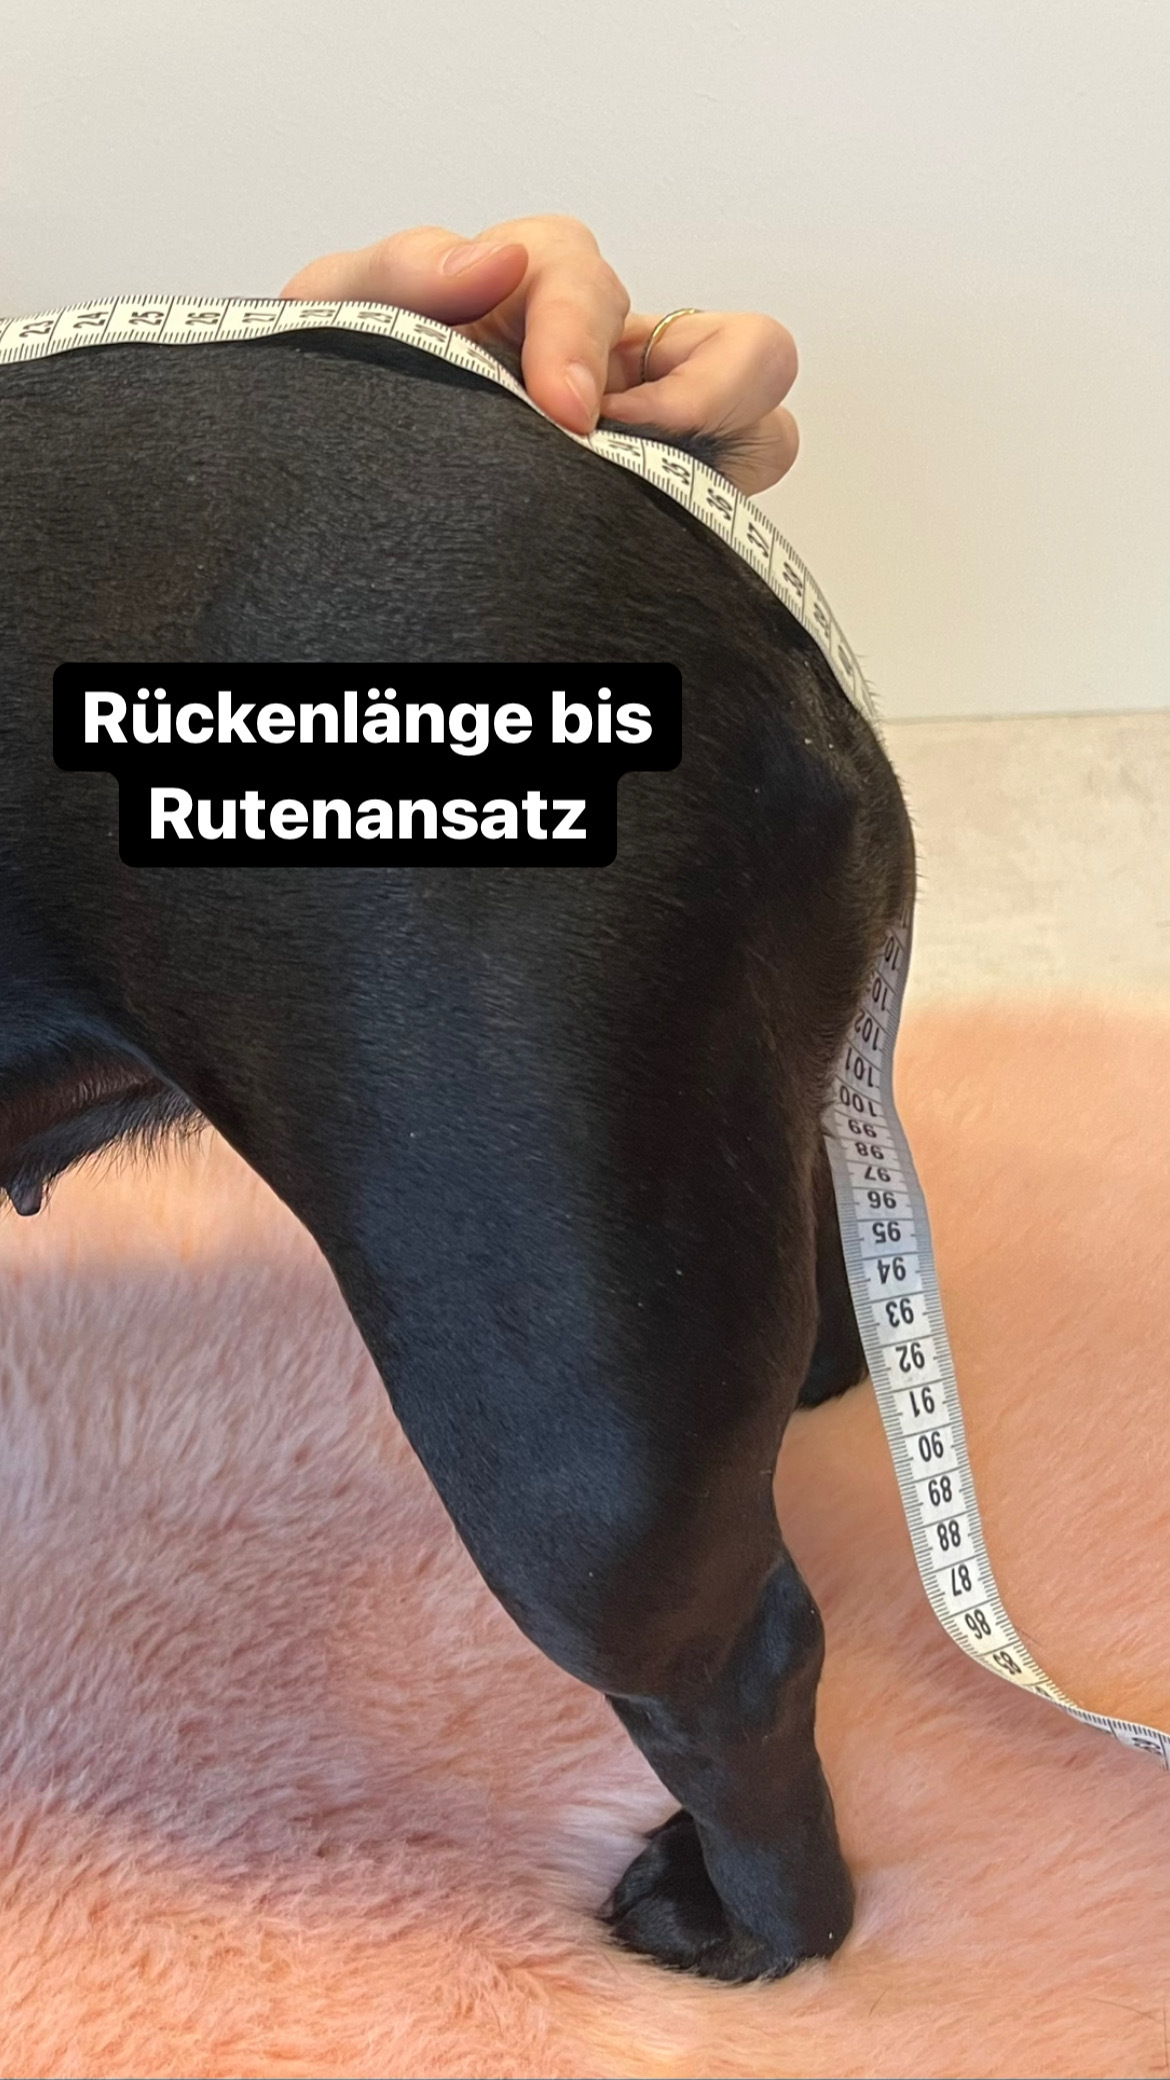 Rueckenlaenge_03